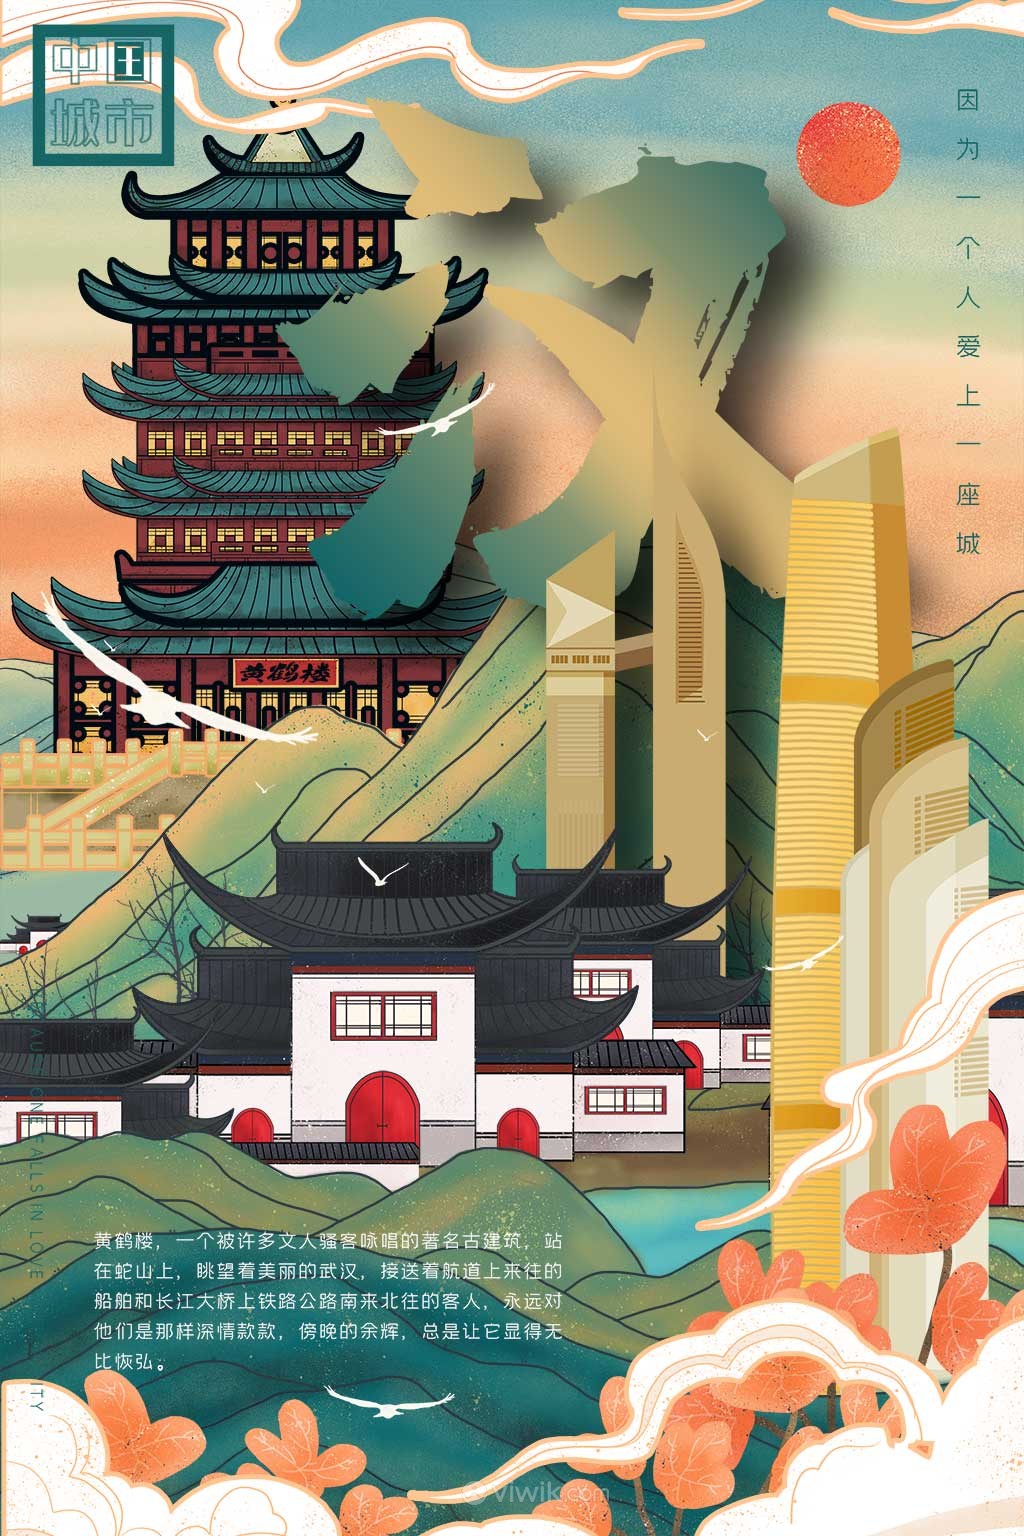 中国城市潮旅游武汉黄鹤楼手绘海报素材